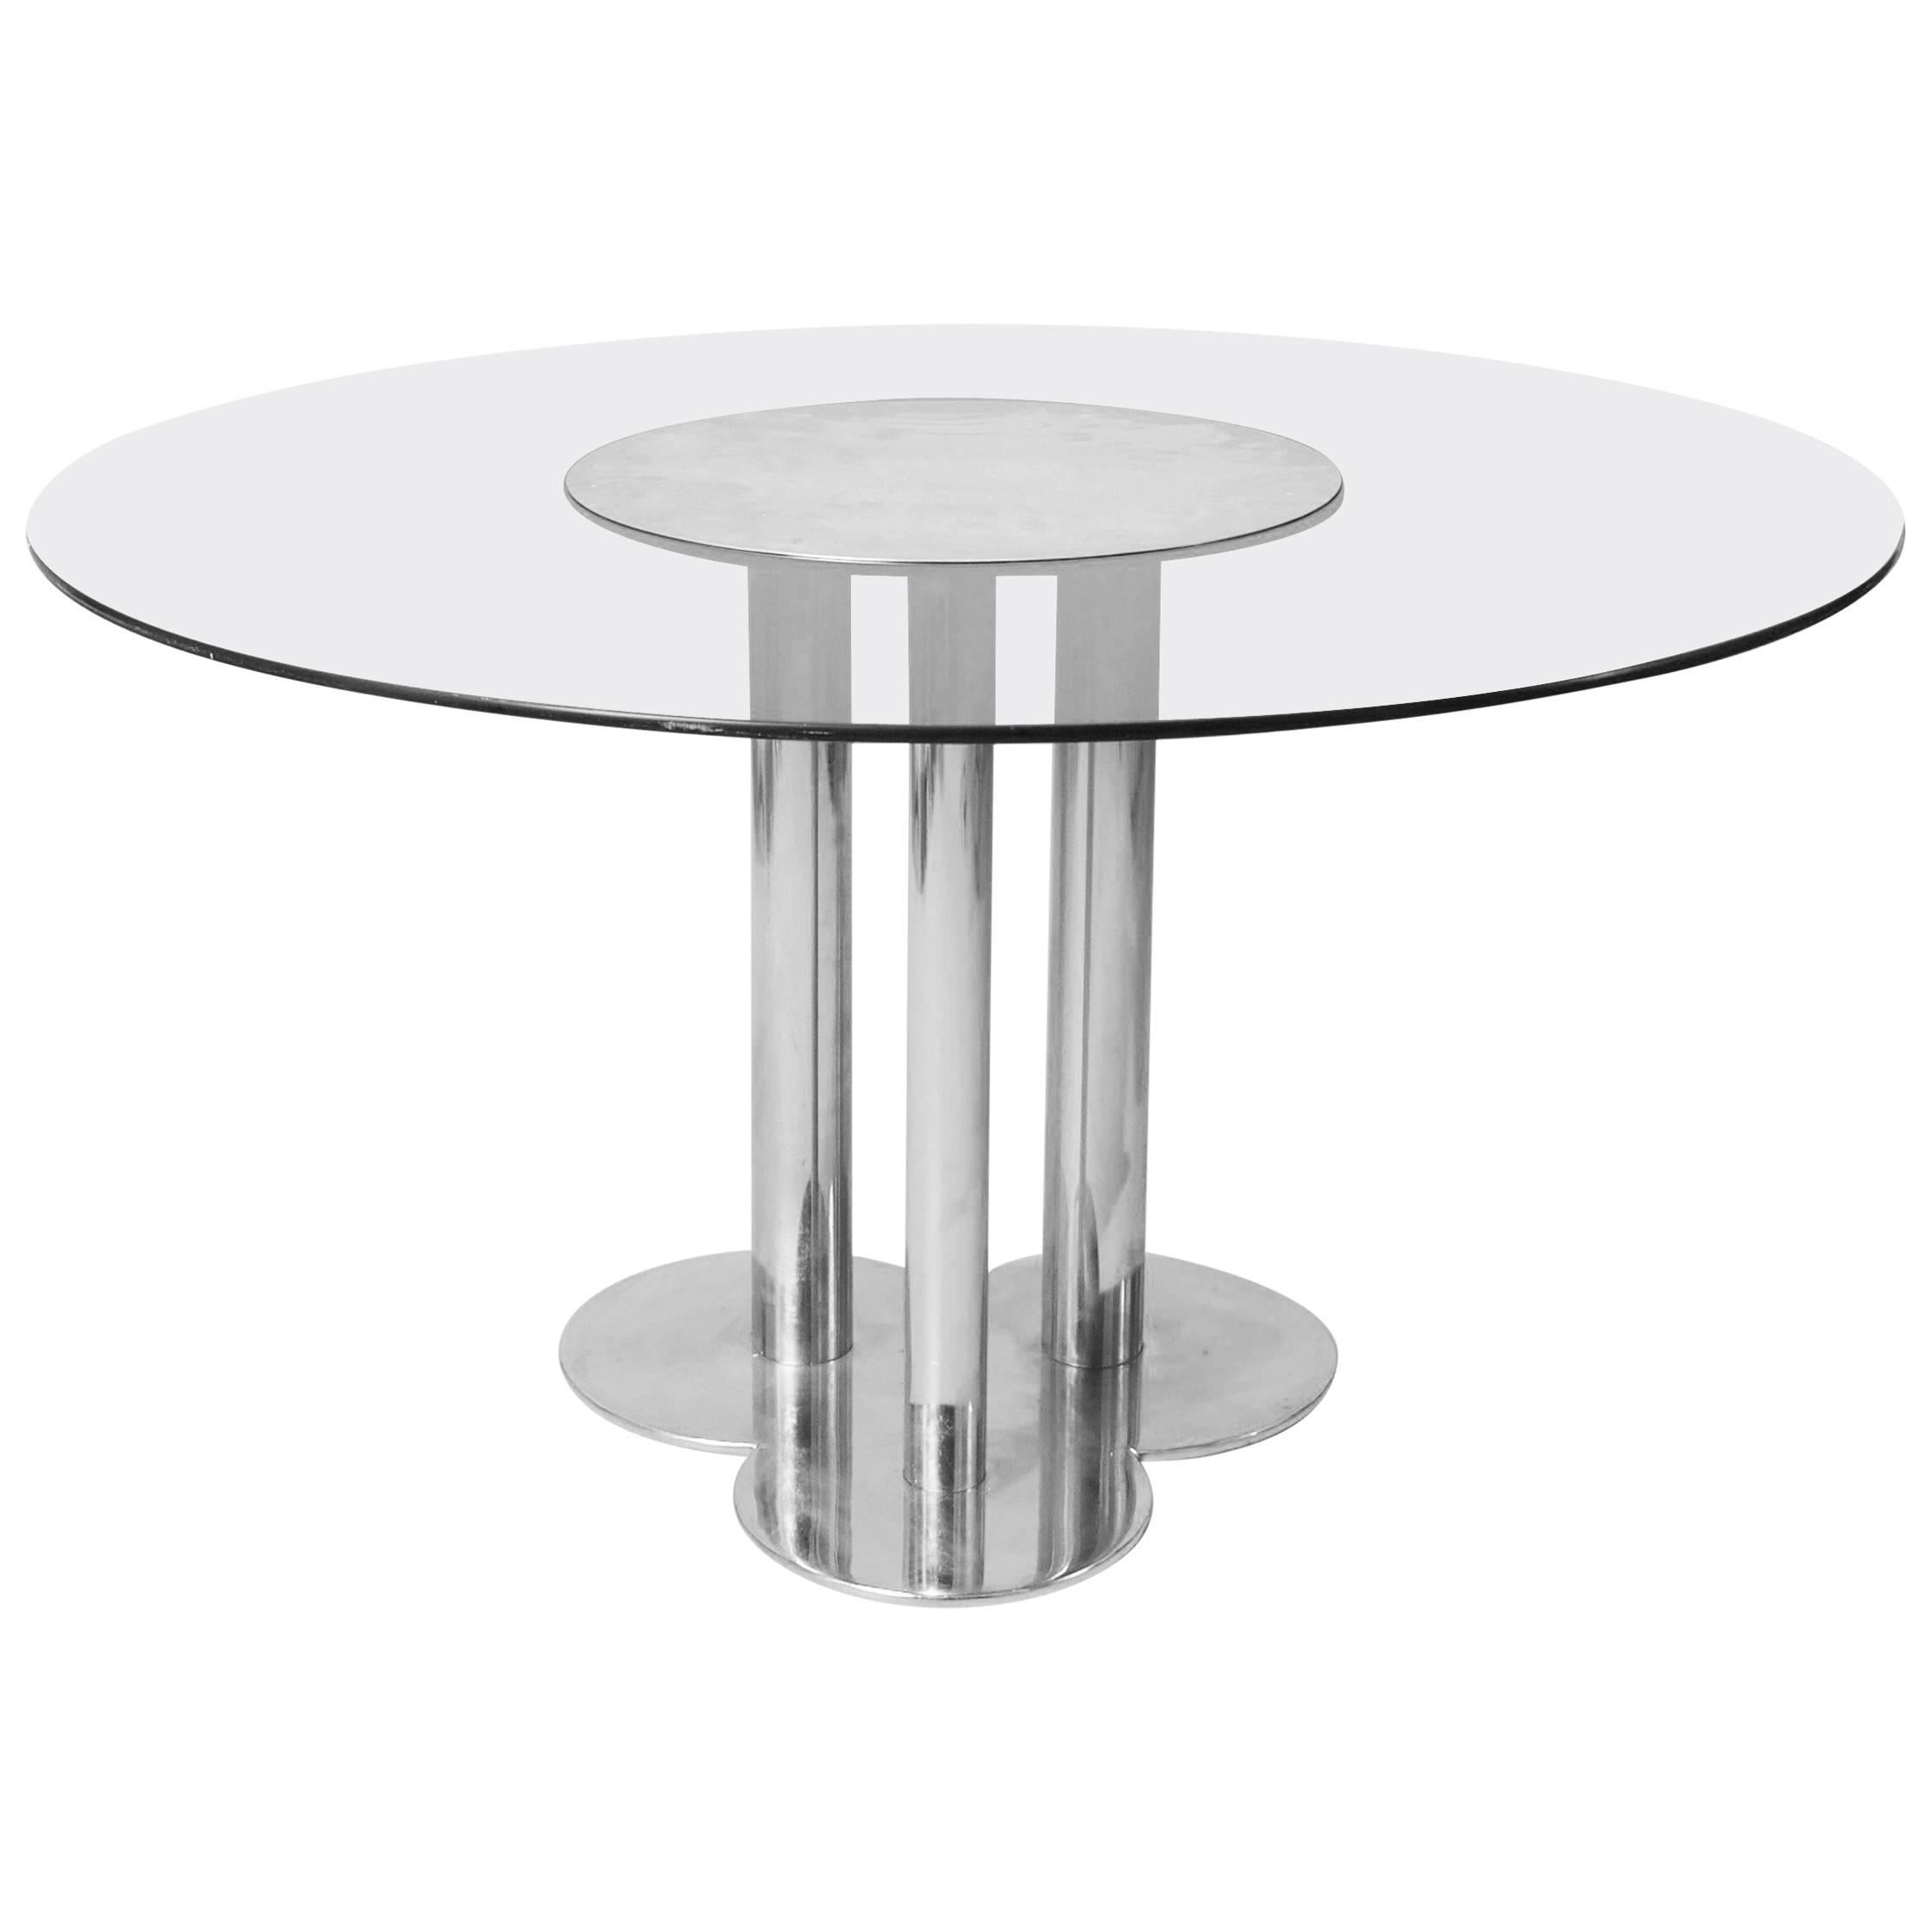 1970s, Cini Boeri Three-Leg Metal and Smoked Glass Circular Table For Sale